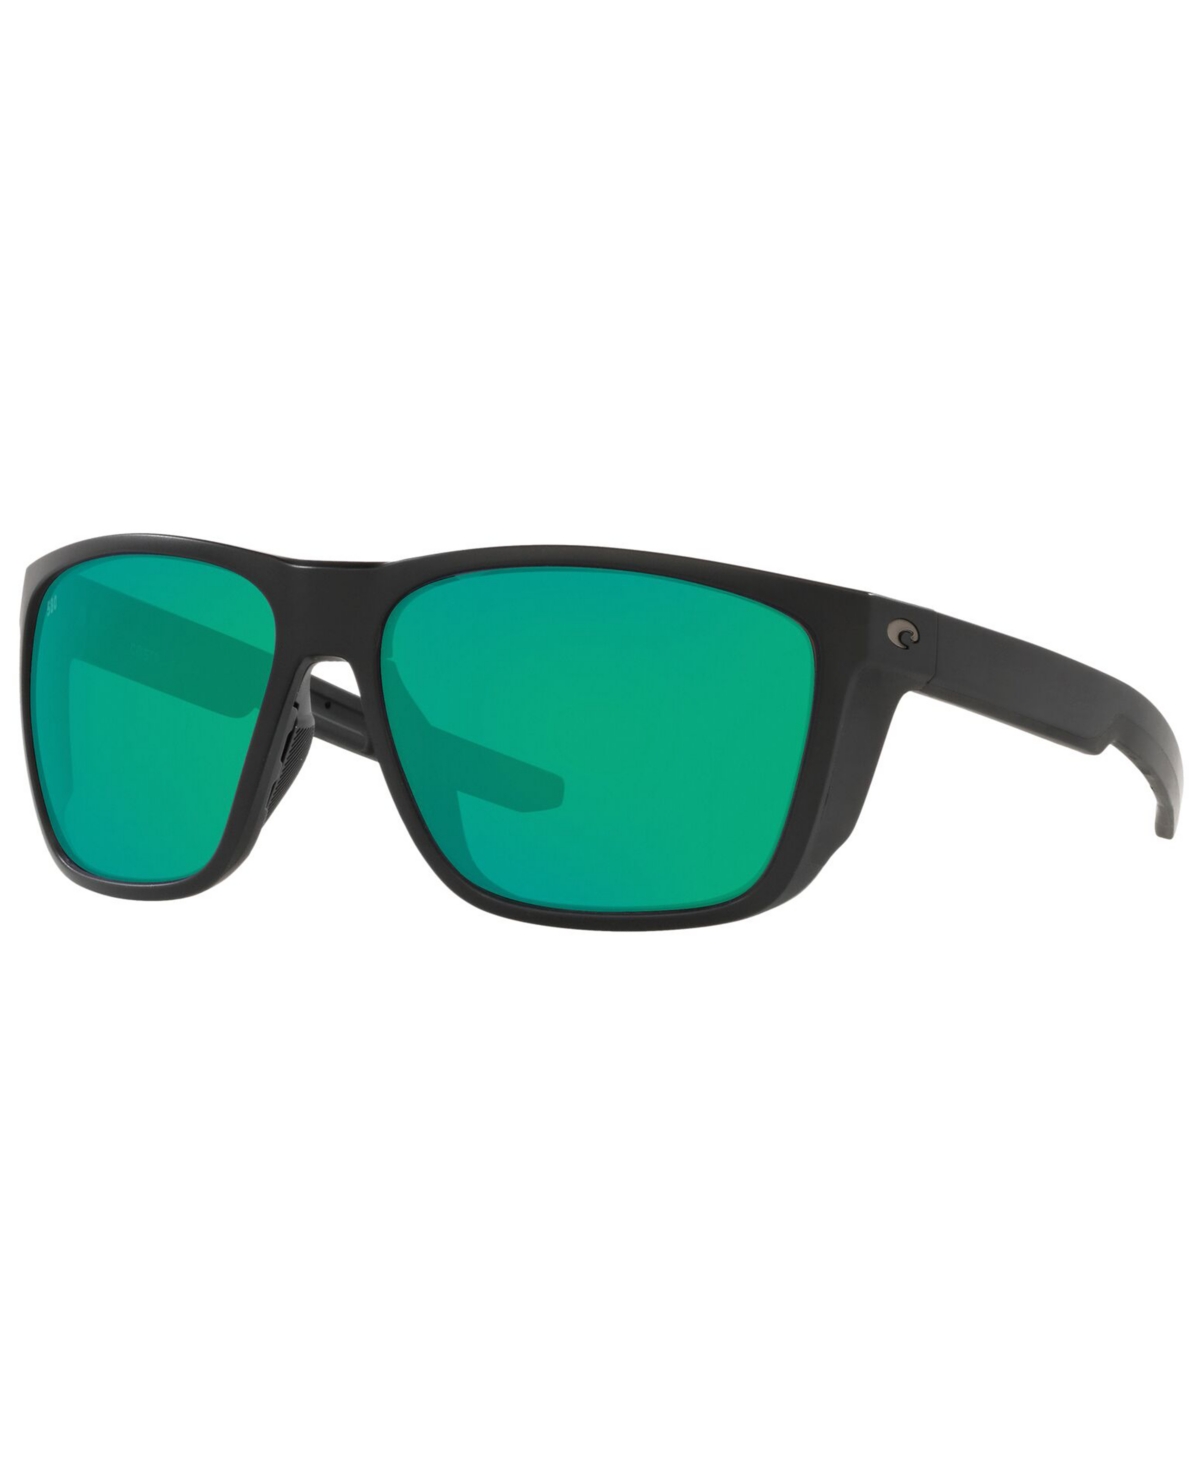 Costa Del Mar Ferg Xl Polarized Sunglasses, 6S9012 62